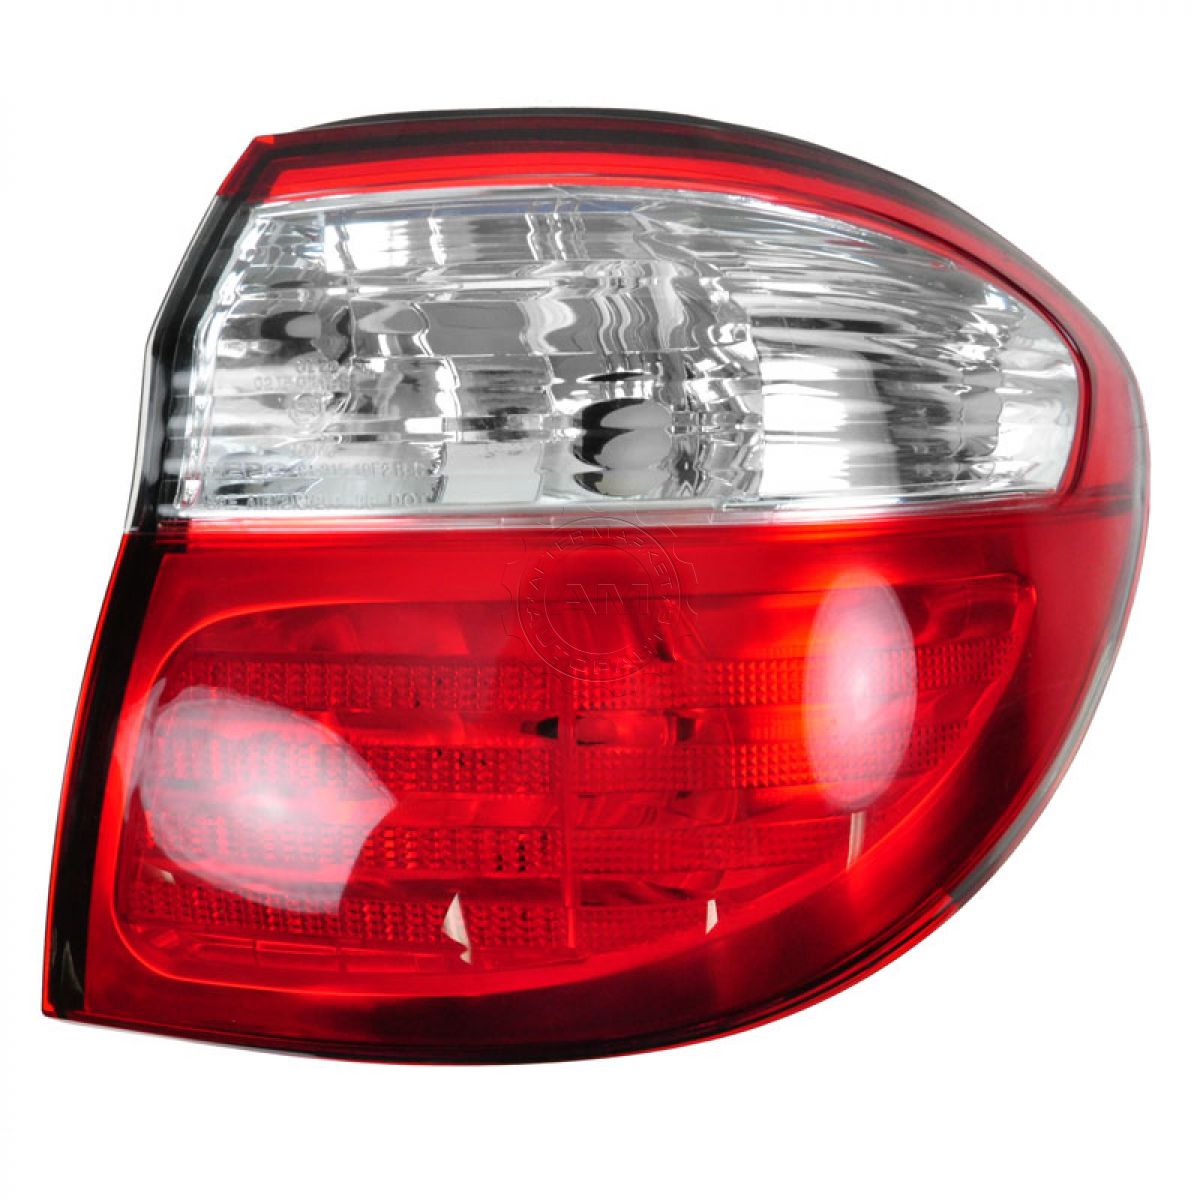 Brake Light Taillight Taillamp Passenger Side Right RH for 00-01 Infiniti I30 | eBay 2001 Infiniti I30 Brake Lights Stay On